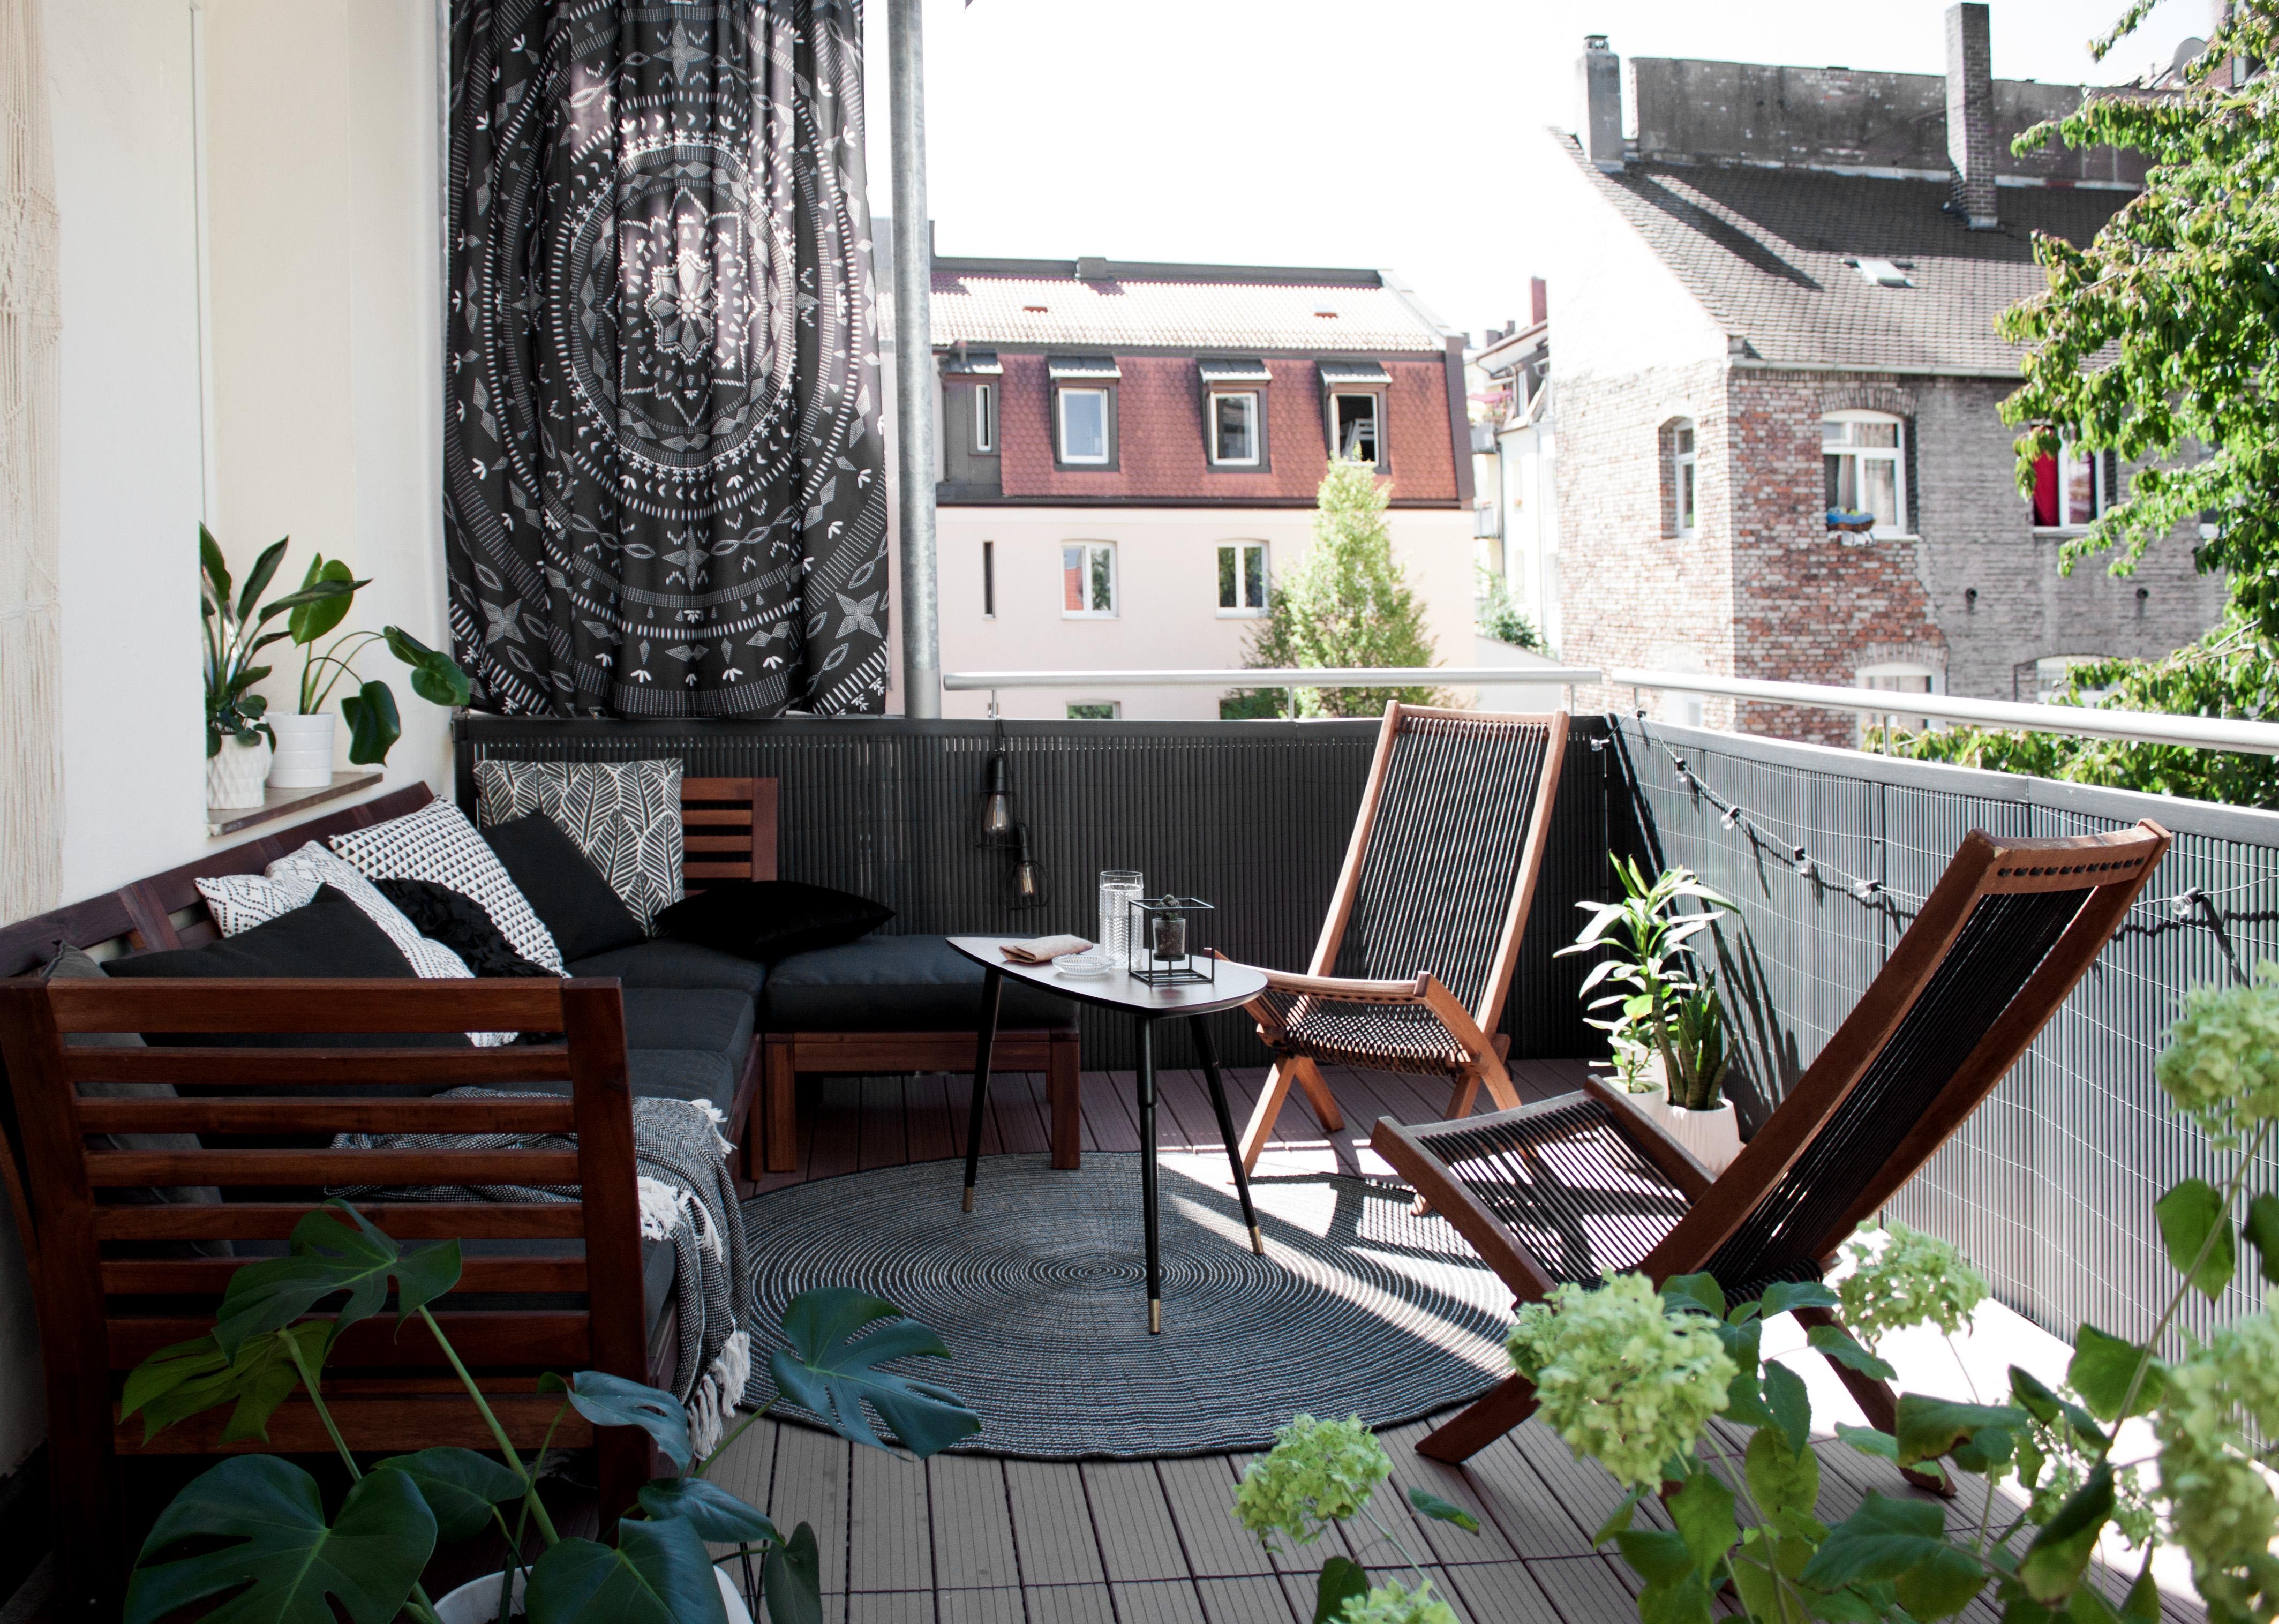 Wir lieben das #draußensein auf unserem Balkon – und noch mehr, wenn bald alles wieder so schön blüht ❊
#livingchallenge